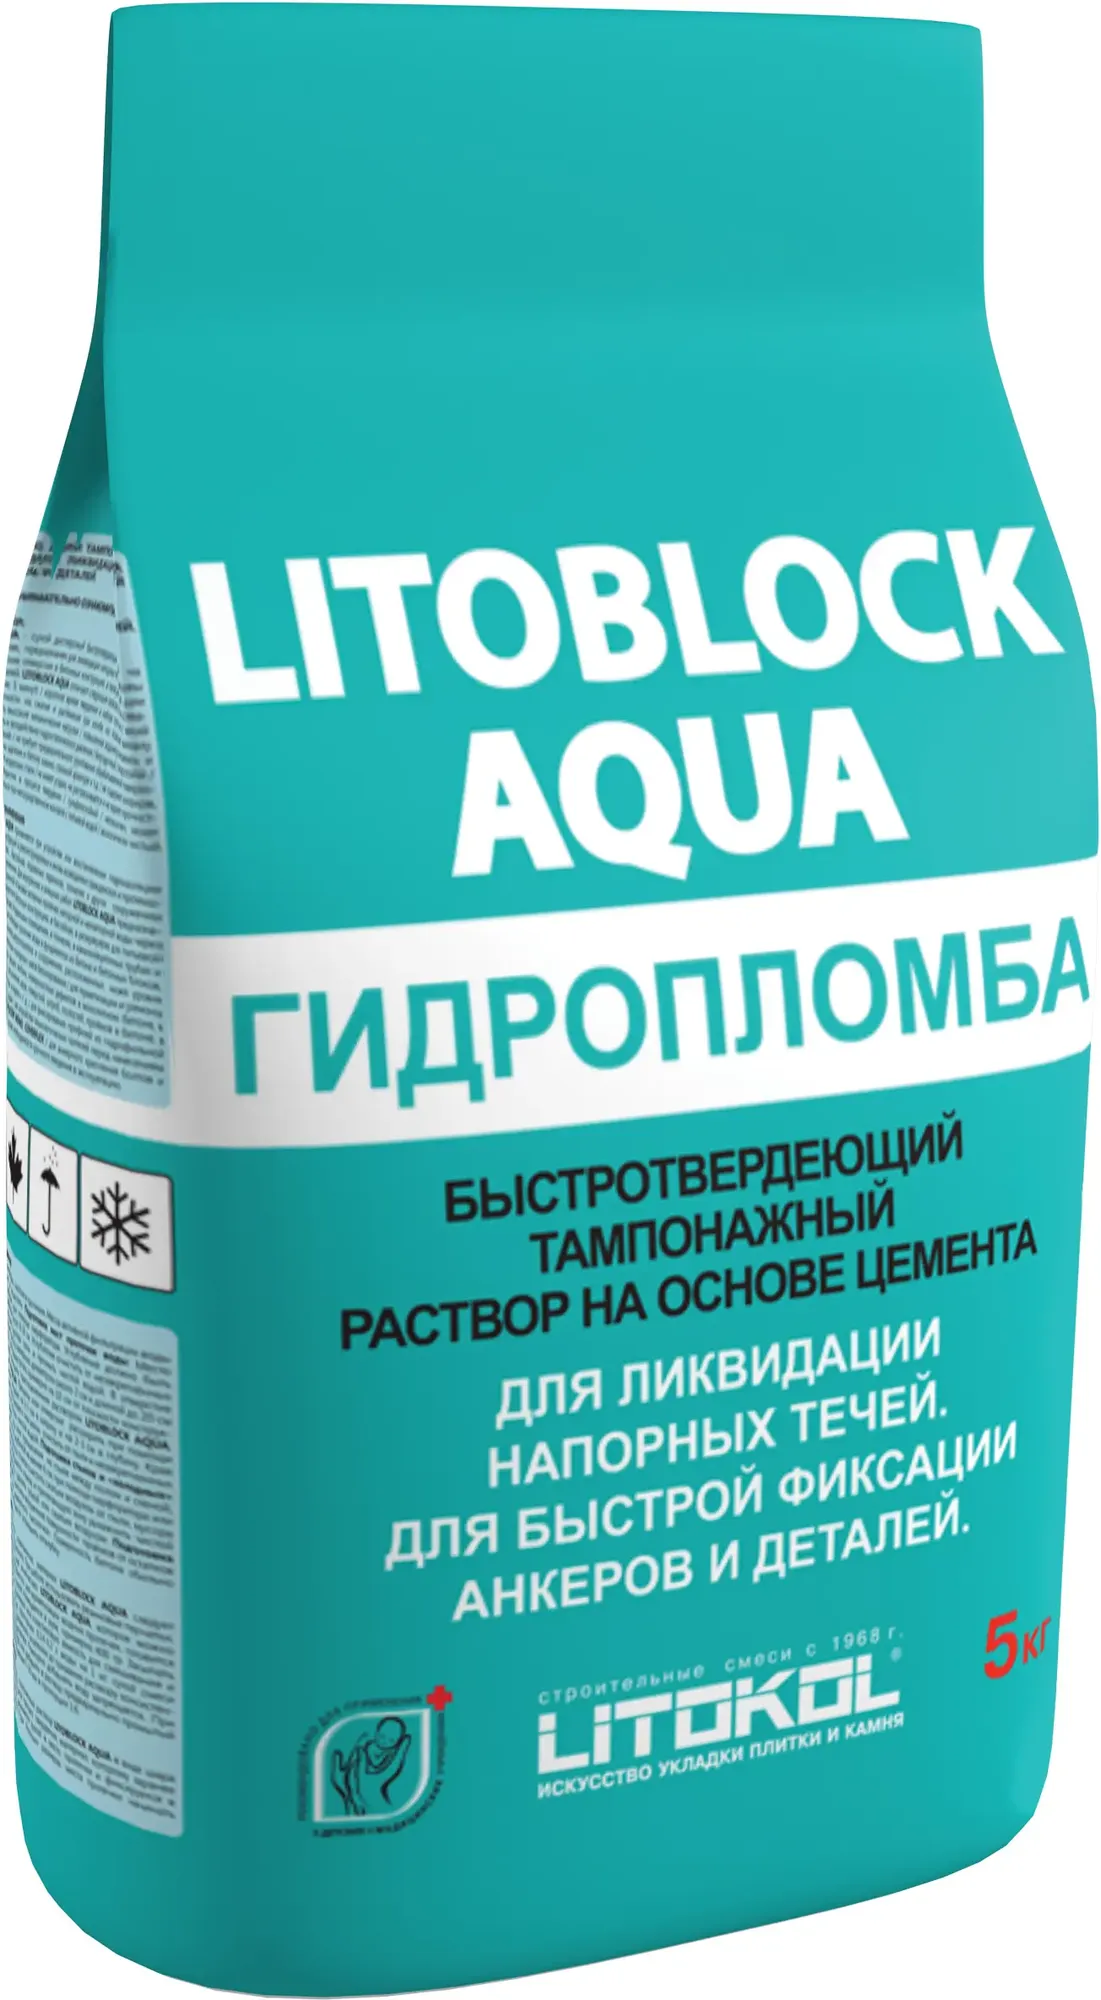 Быстротвердеющий тампонажный раствор на основе цемента Литокол Litoblock Aqua Гидропломба 5 кг